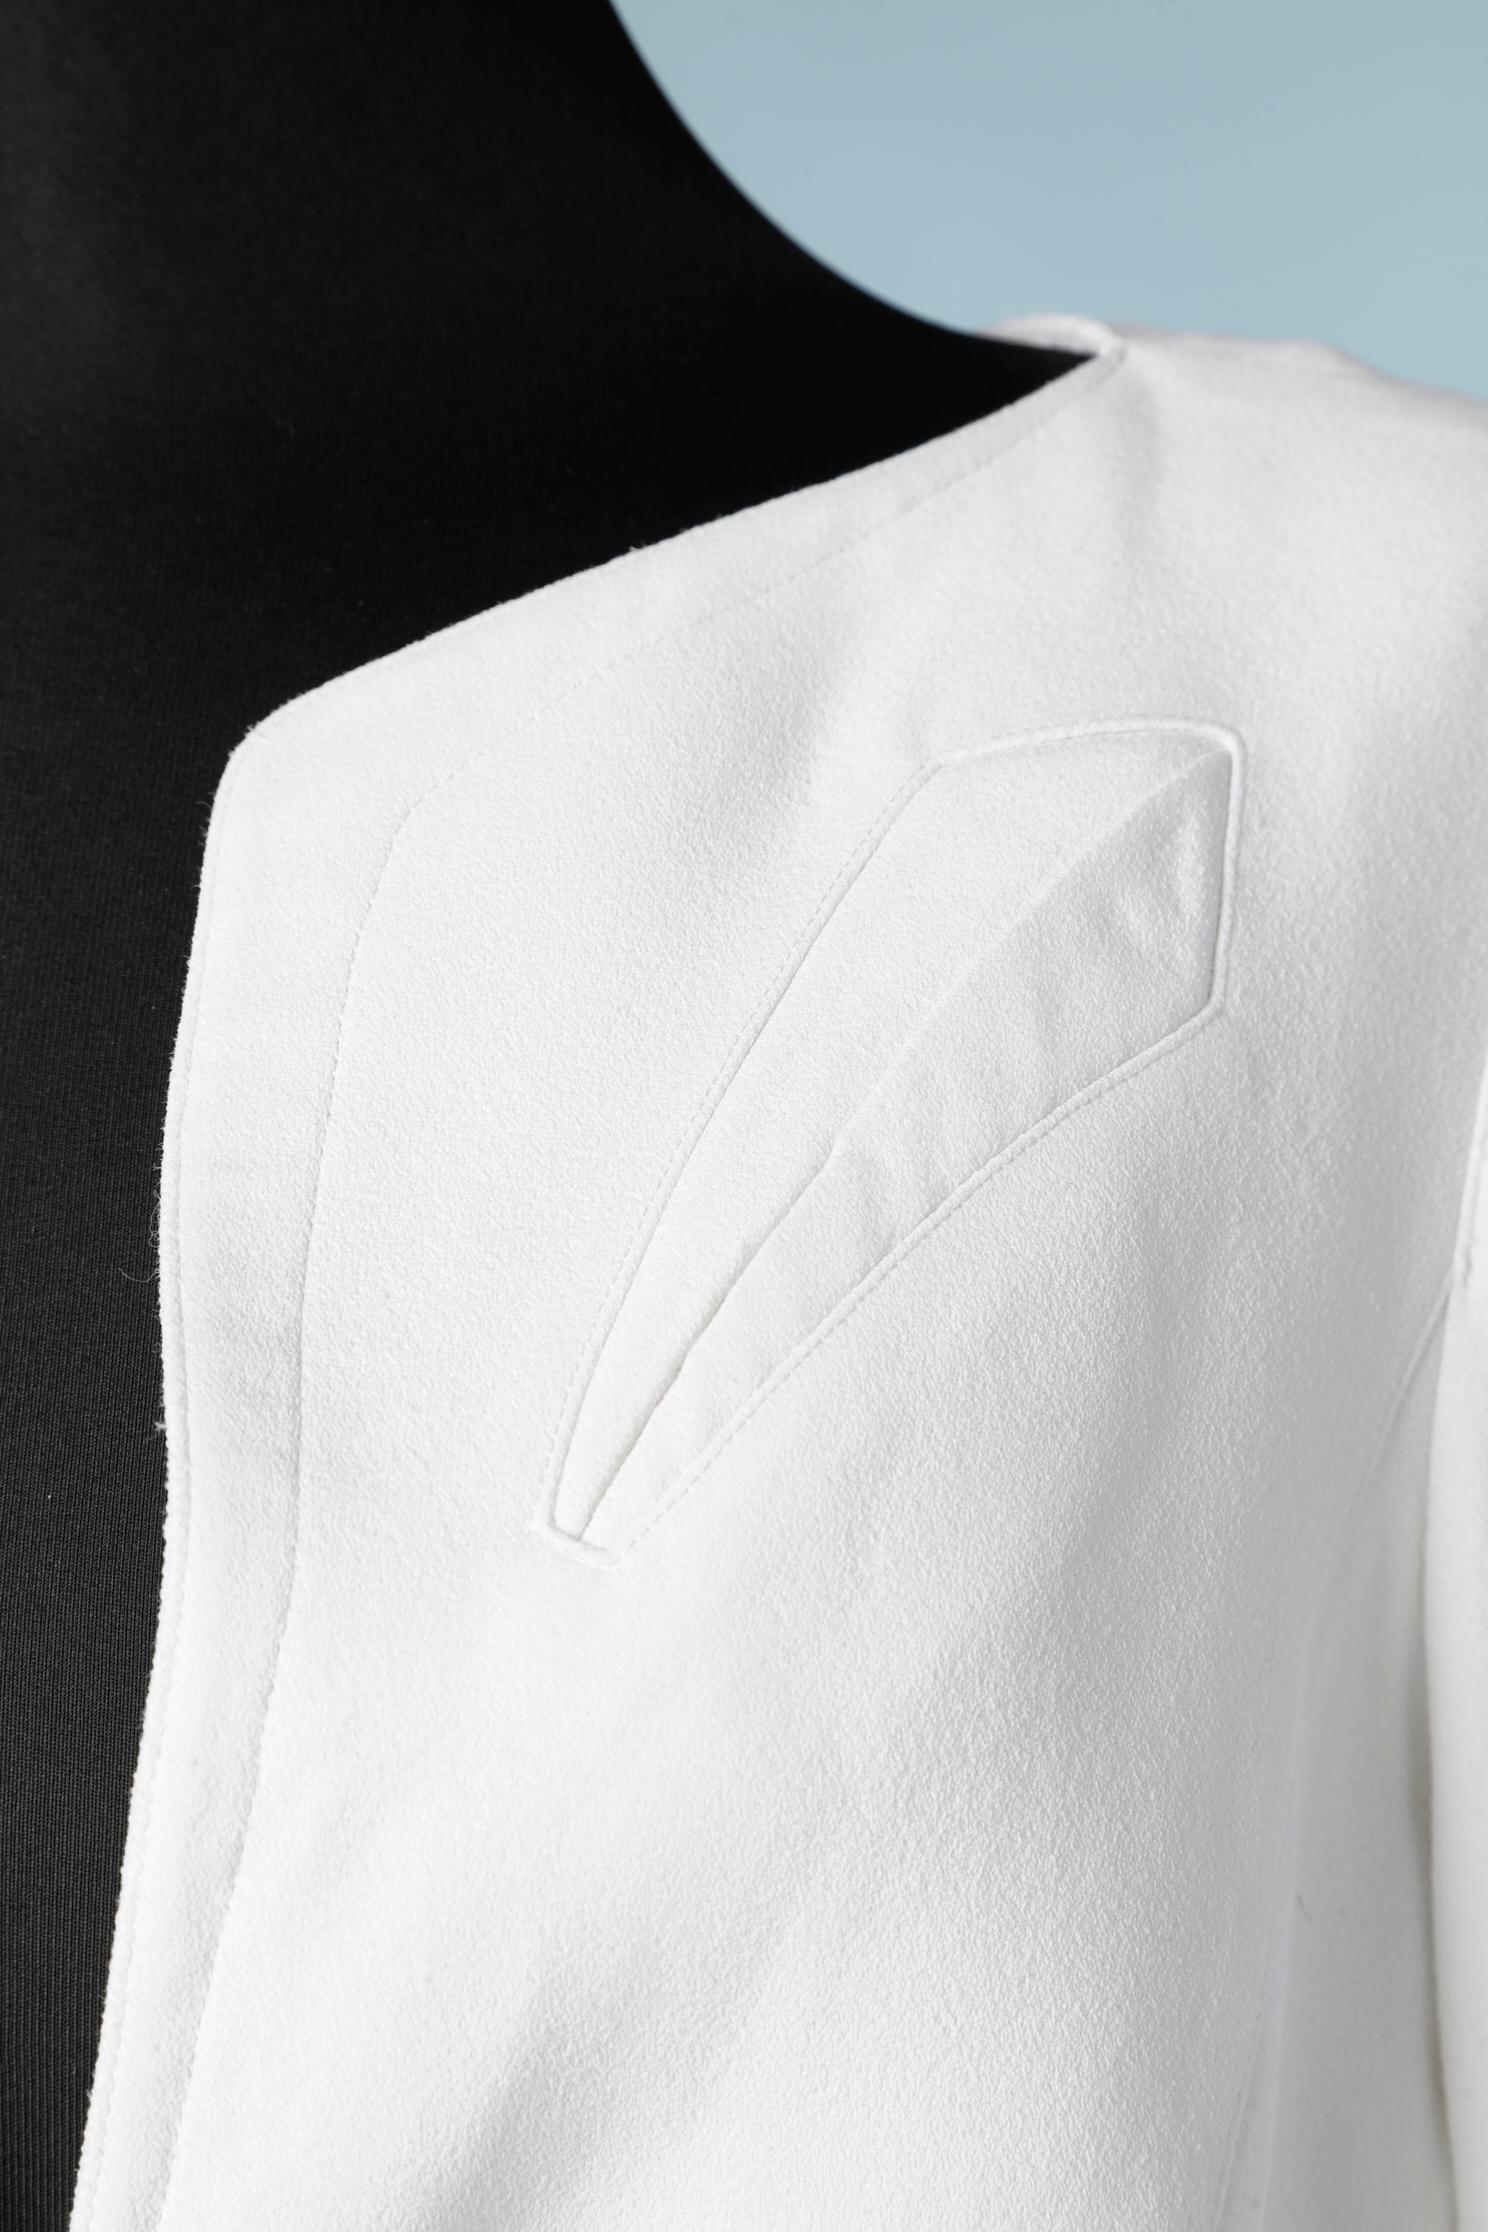 Combinaison jupe en crêpe blanc. Jupe portefeuille, veste simple.
L'étiquette de la marque a été coupée. 